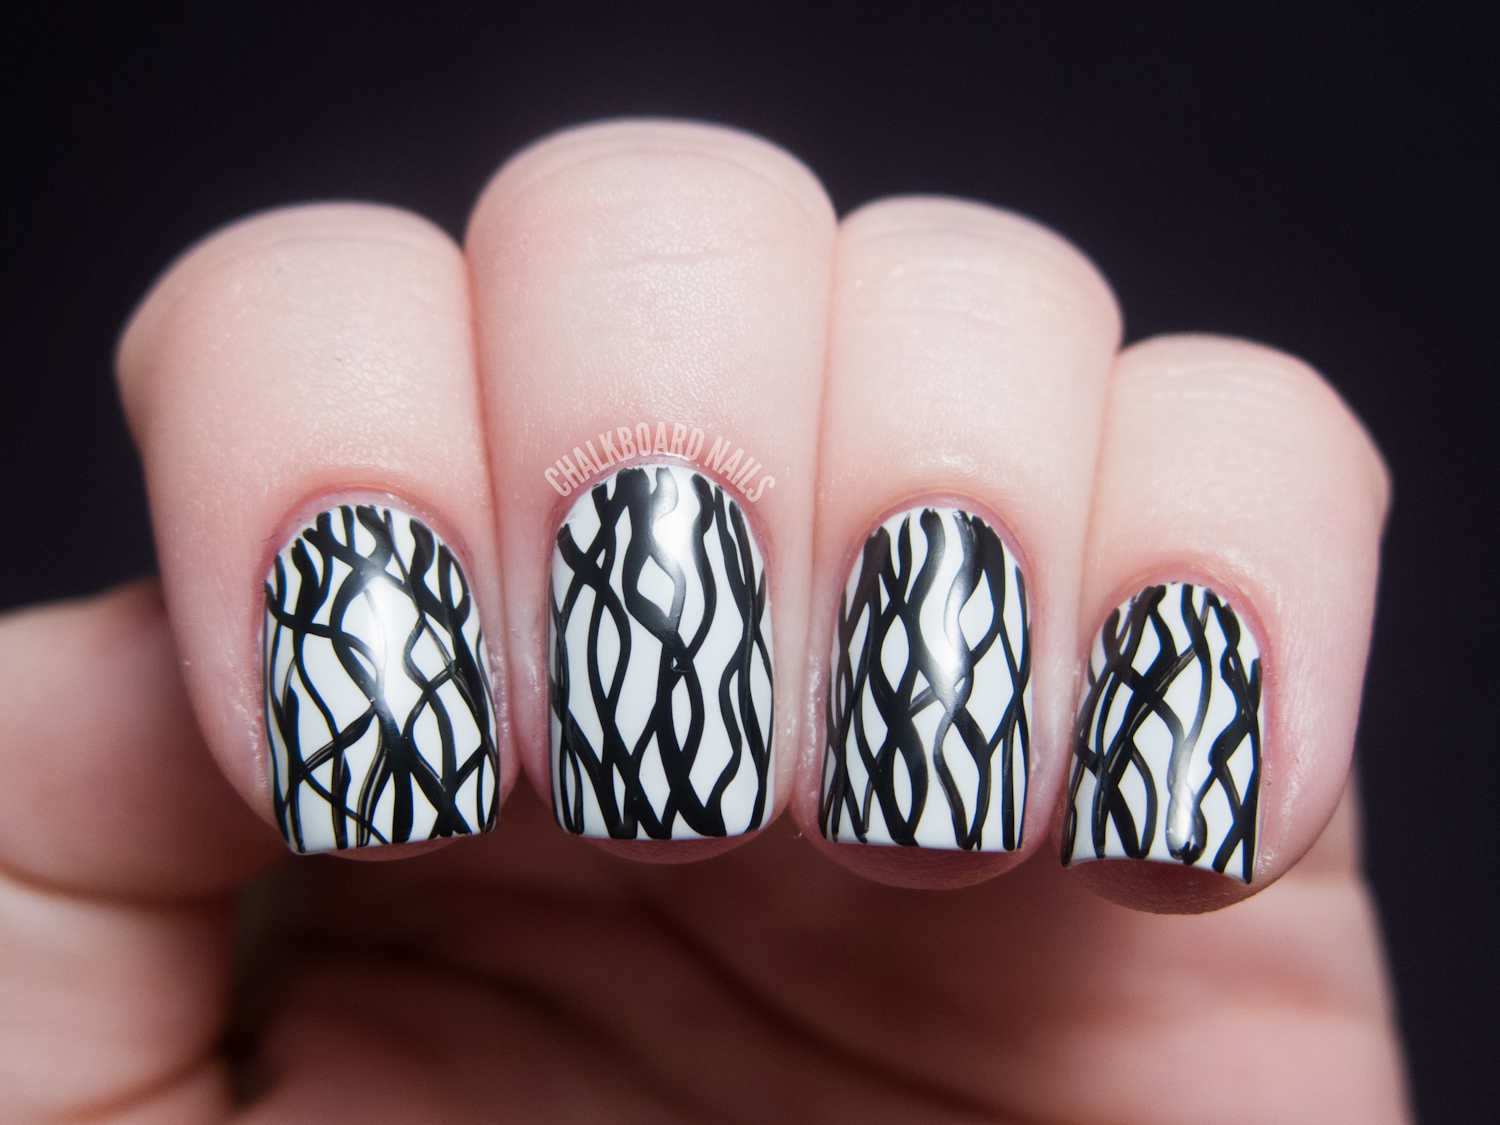  : Day 07, Black and White Nails  Chalkboard Nails  Nail Art Blog